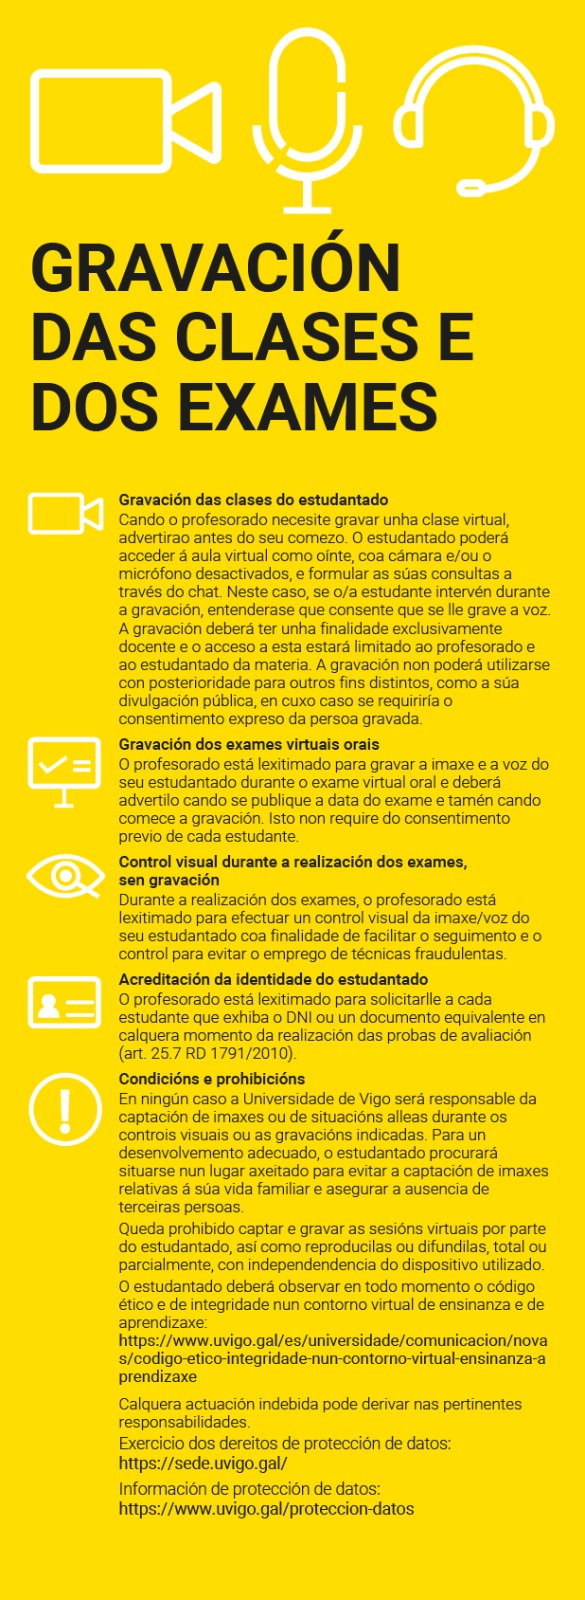 Cartel amarillo con el aviso de la grabación de las clases y de los exámenes